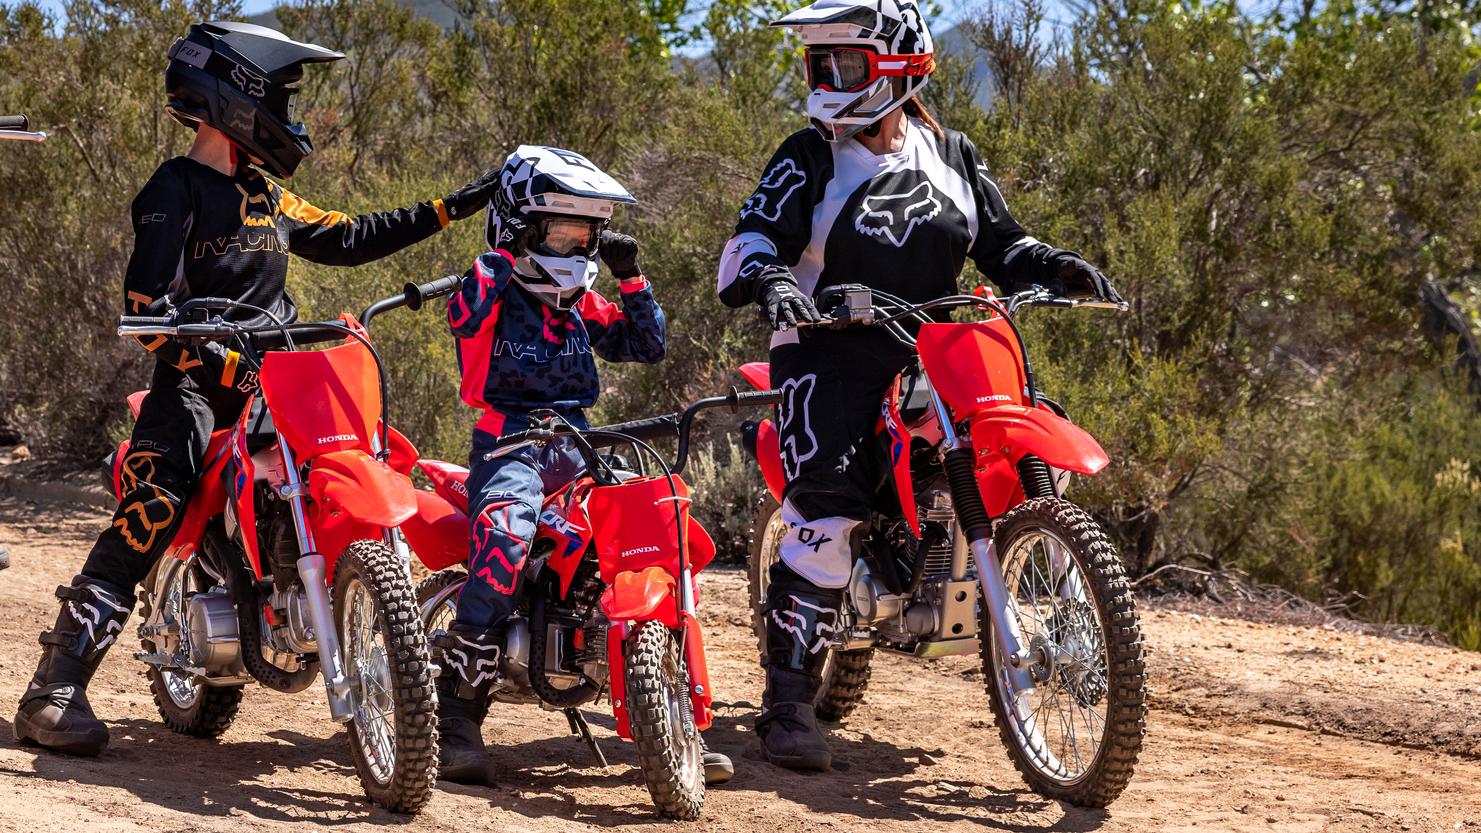 honda motocross bikes for kids